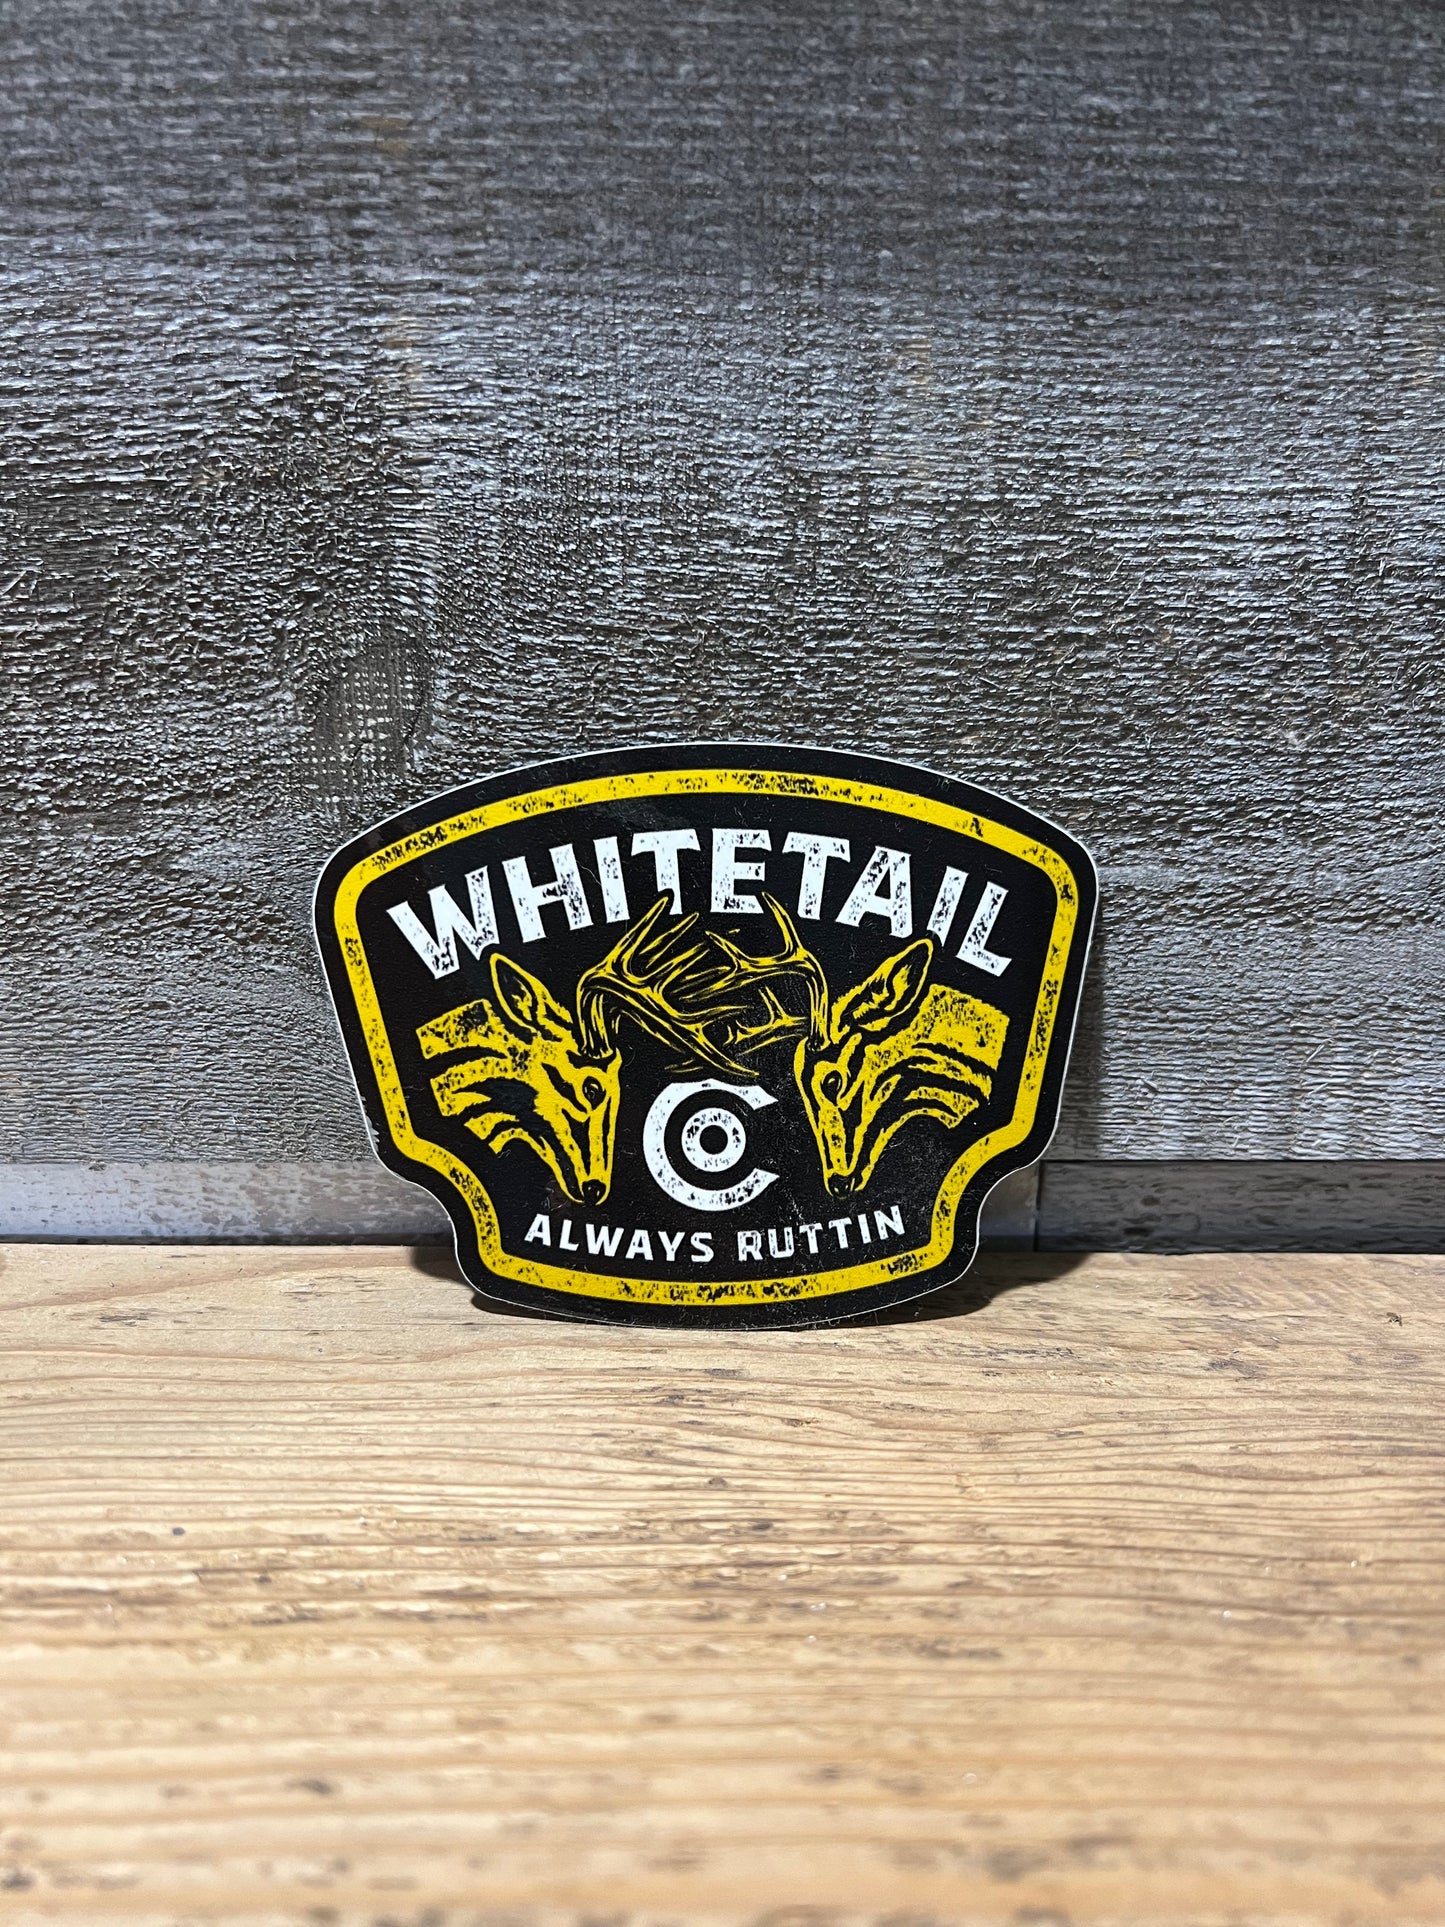 Whitetail Co. Always RUTTIN 3” Decal